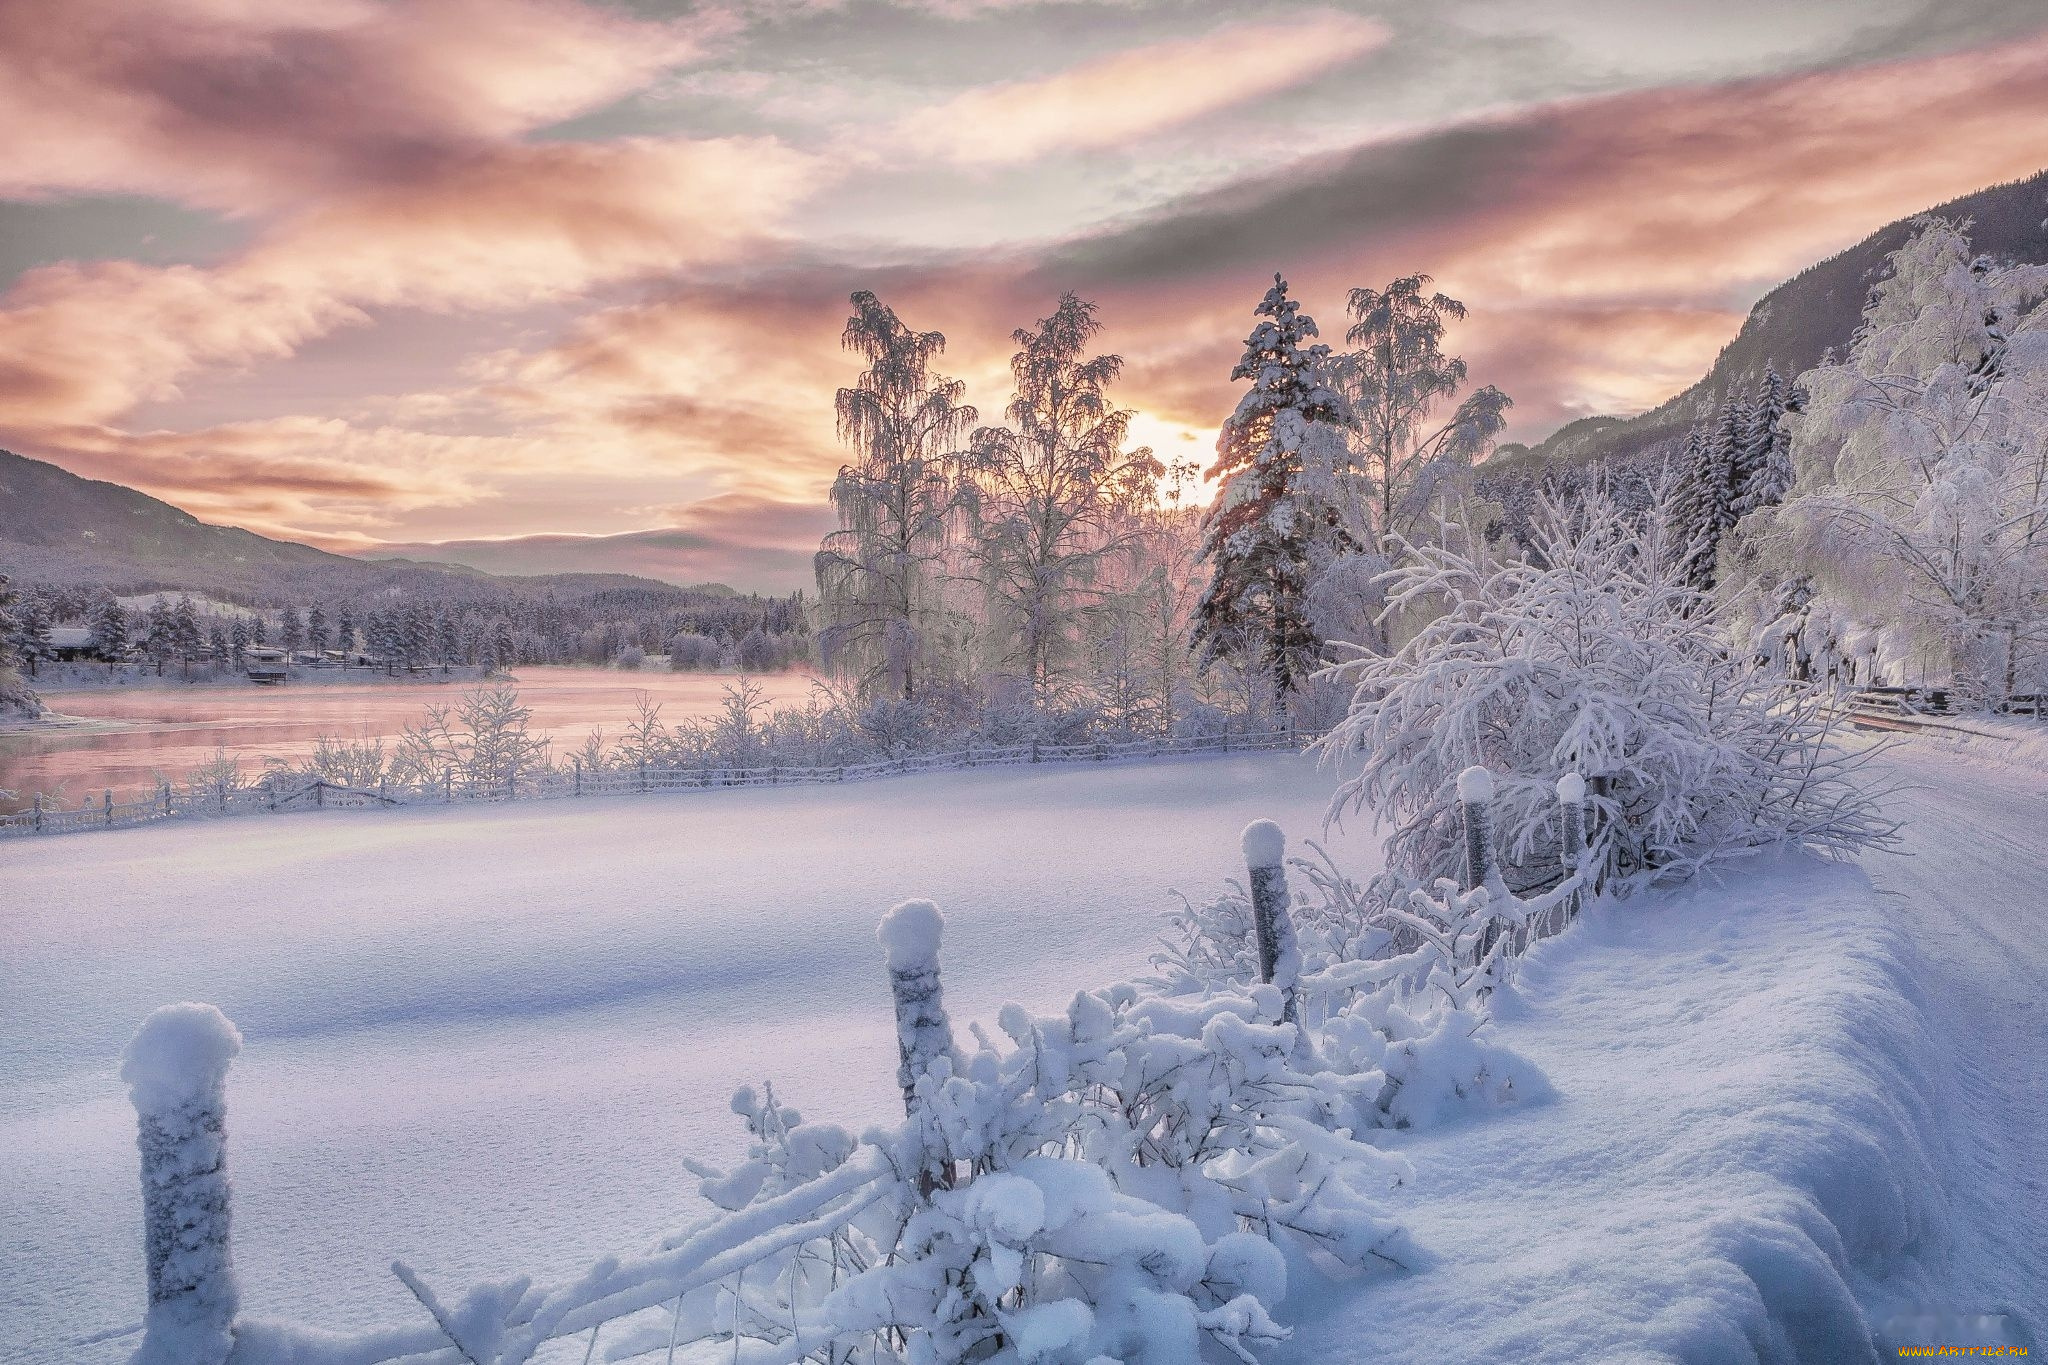 Пейзаж зимы. Красивая зима. Красота зимы. Красивые зимние фото. Снежная красота зимы.